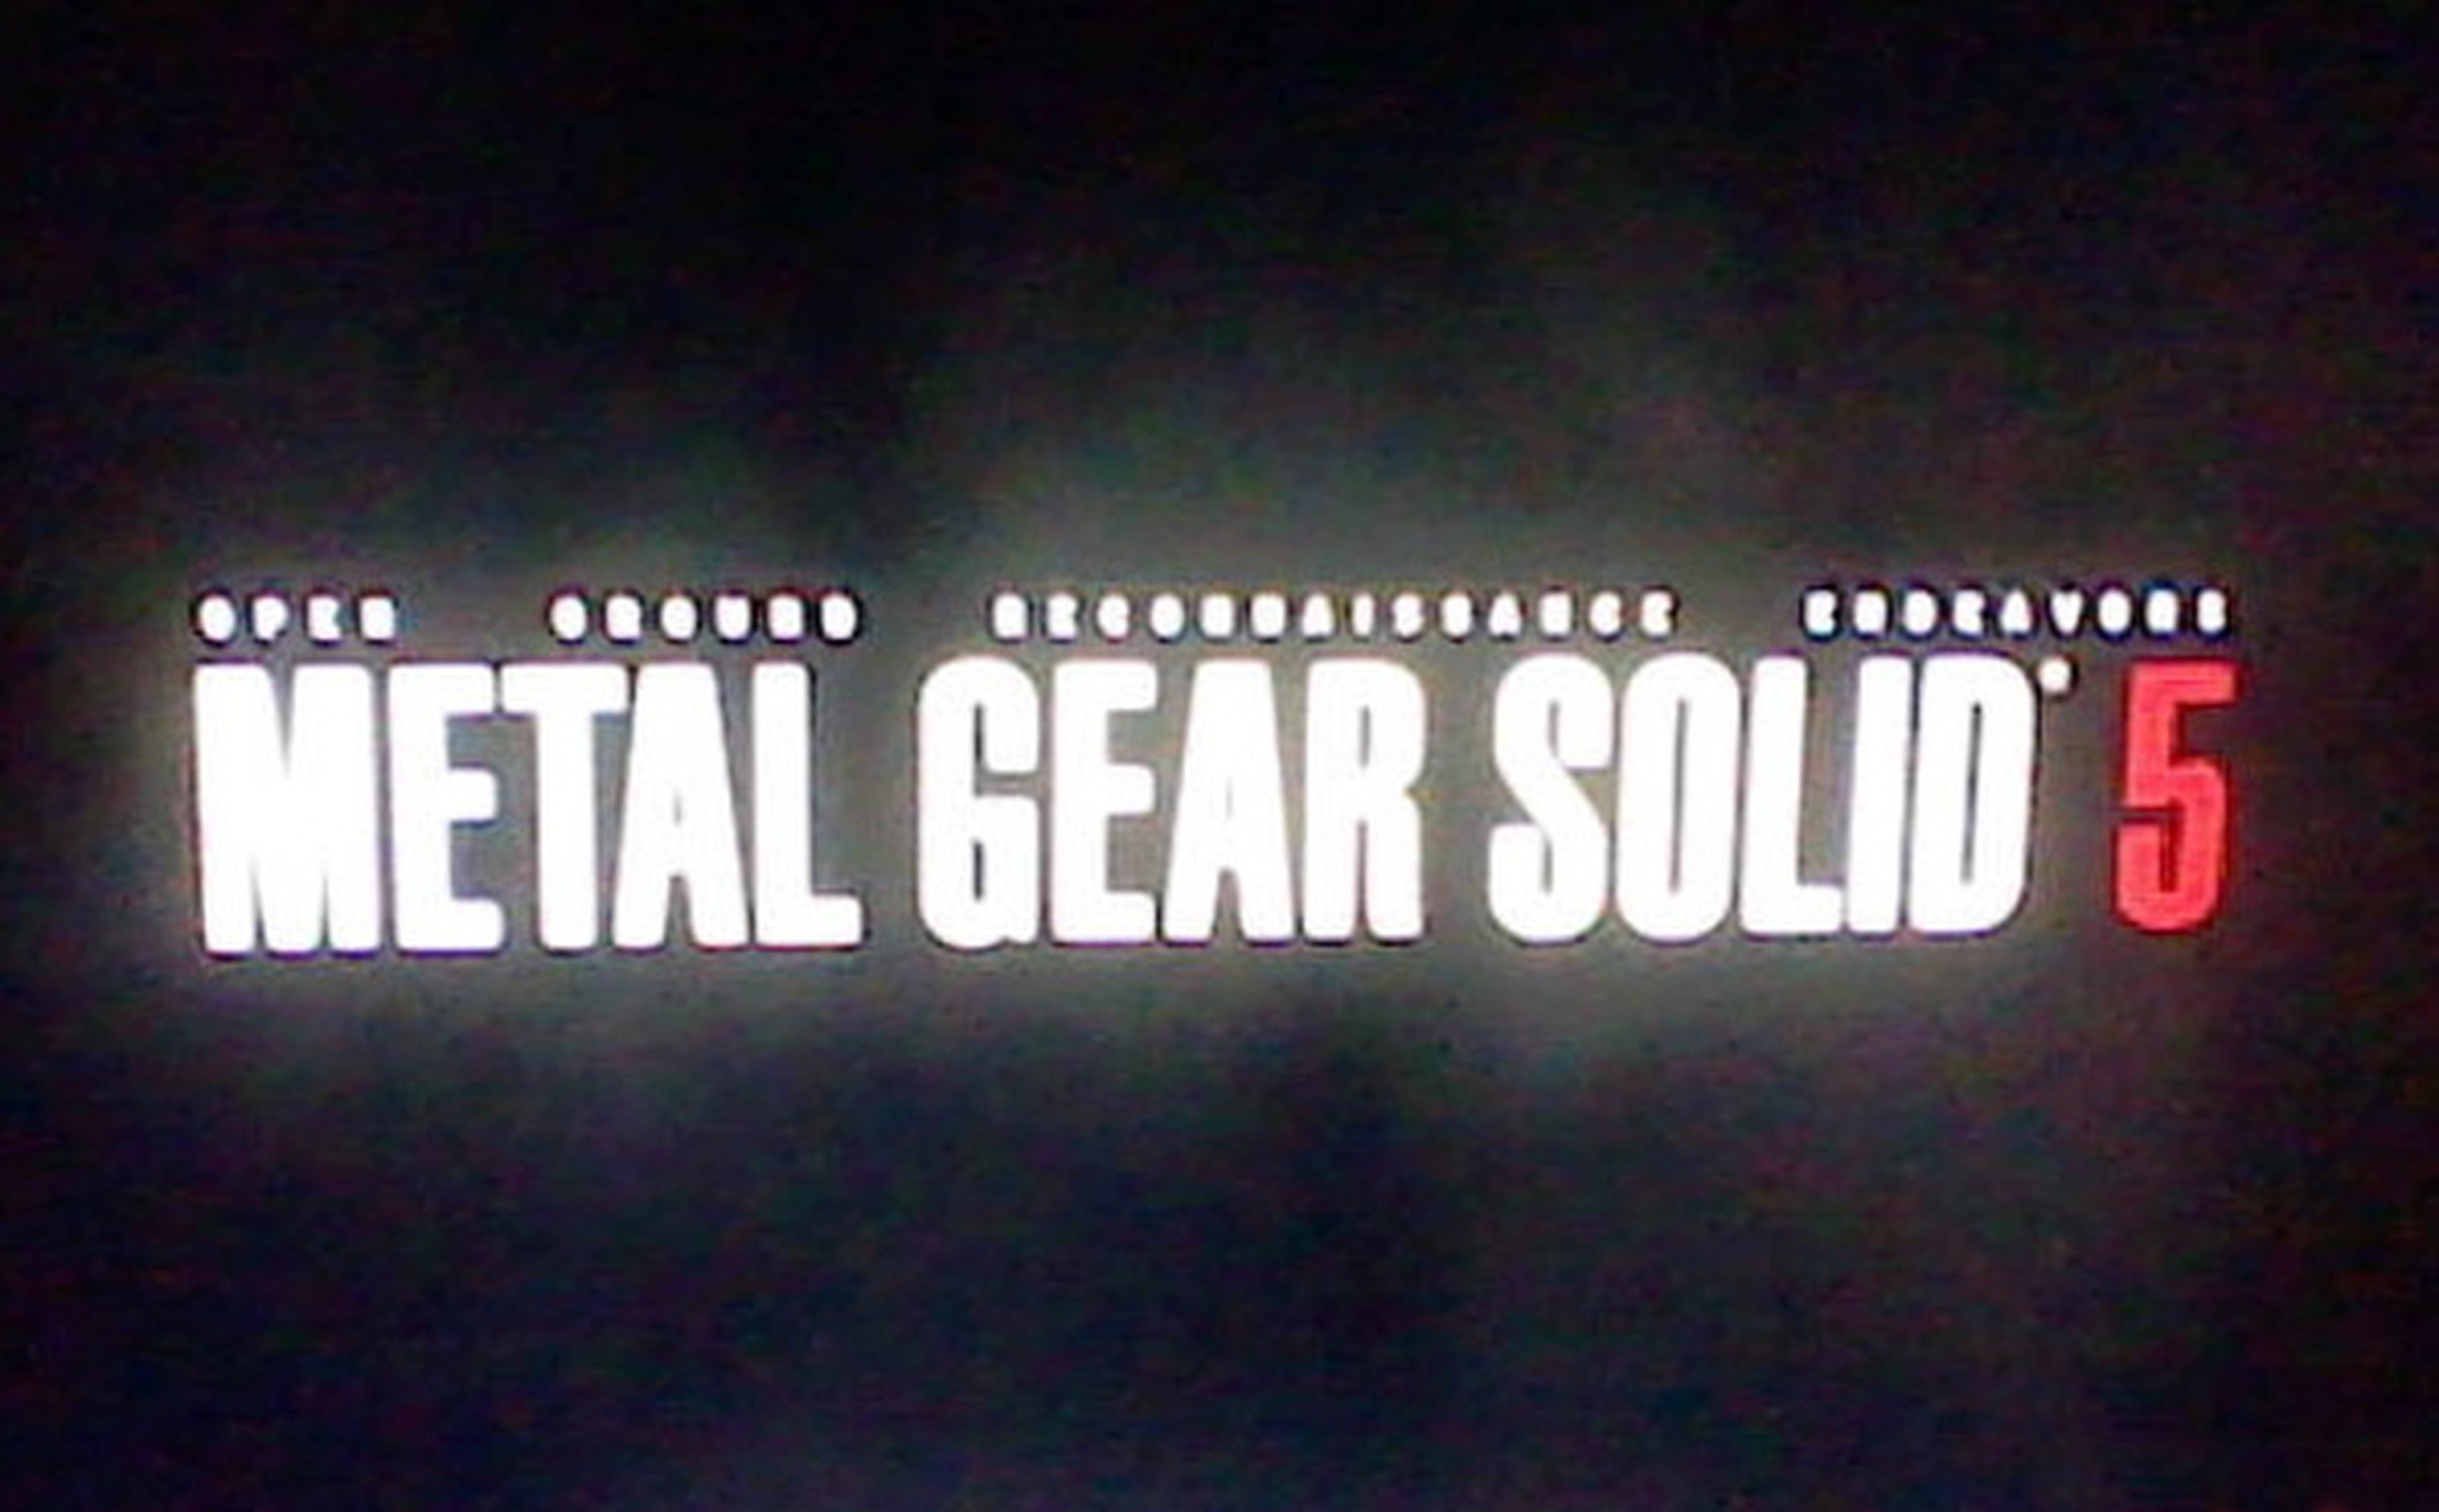 Falsa alarma con Metal Gear Solid 5